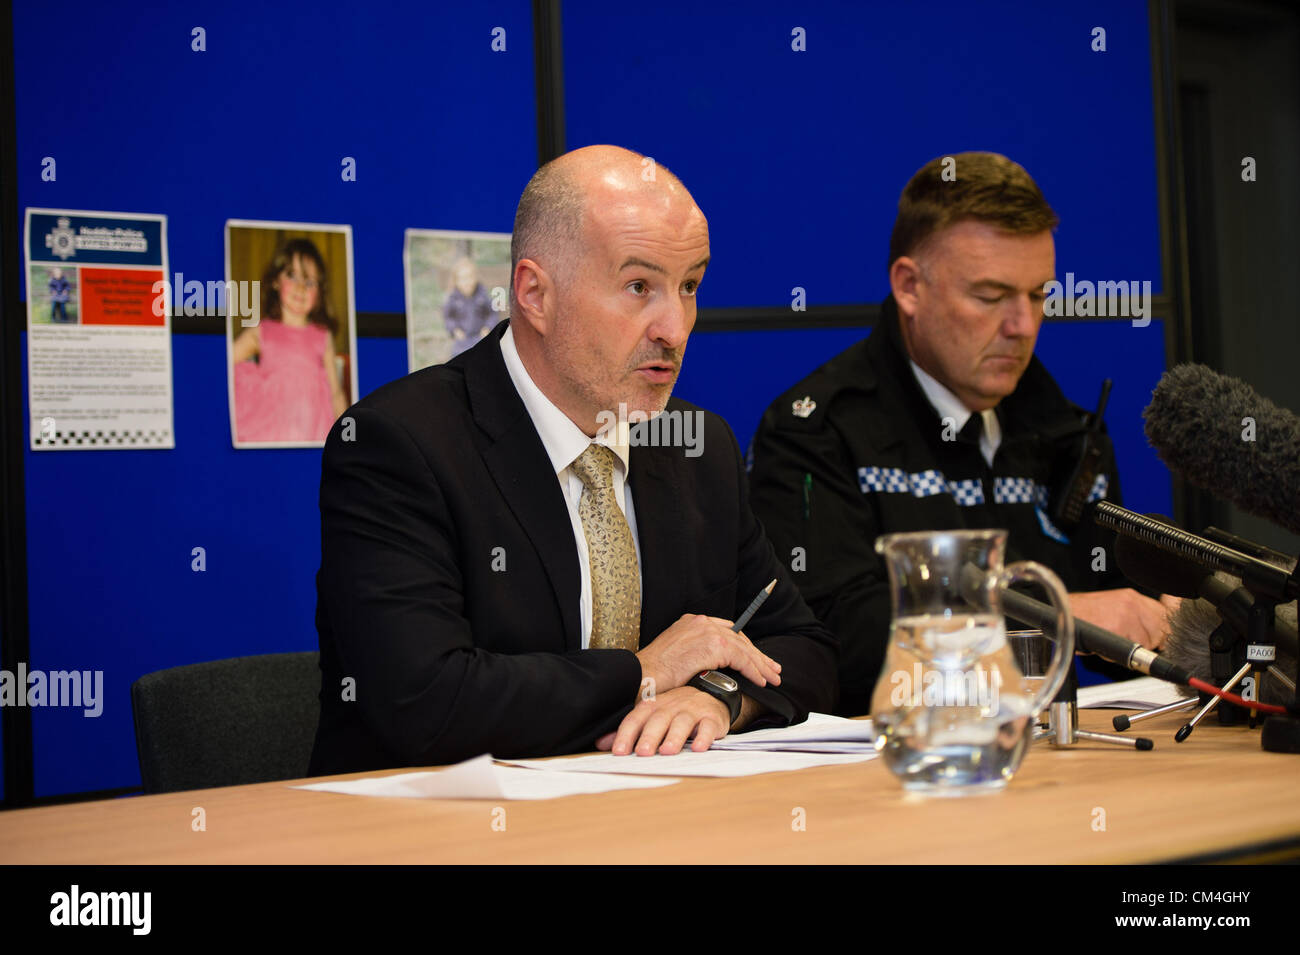 2 Oct 2012, Aberystwyth UK : Detective Superintendant REG BEVAN (gauche, adaptées) et Superintendant IAN JOHN (à droite) en uniforme, lors d'une conférence de presse La mise à jour des informations sur les recherches pour retrouver 5 ans, fille d'AVRIL JONES. Ils ont annoncé, mais n'a pas nom, qu'un homme de 46 ans avait été arrêté au sujet de l'enlèvement et était remis en question au poste de police de Aberystwyth cette nuit. L'homme a été nommée localement comme ex-soldat MARK BRIDGER Photo ©keith morris Banque D'Images